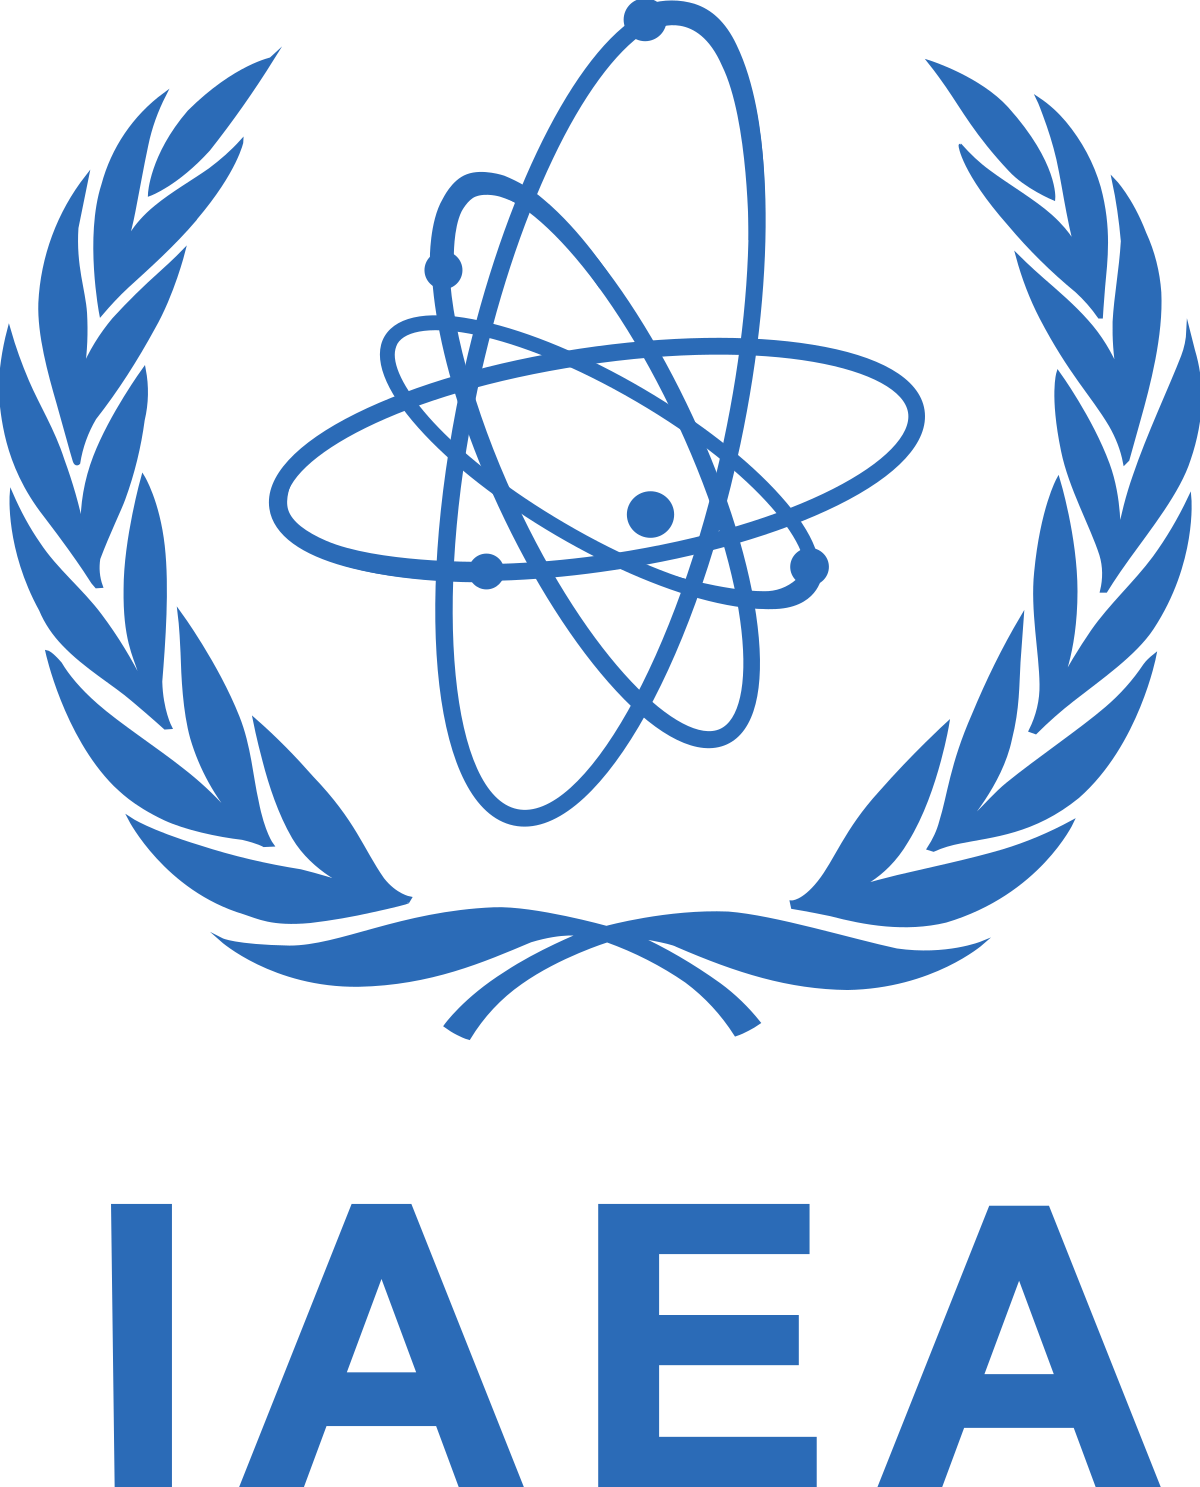 İran'ın ele geçirdiği Birleşmiş Milletlere (BM) bağlı Uluslararası Atom Enerjisi Ajansı (IAEA) belgelerini nükleer soruşturmalardan kaçınmak için kullandığı öne sürüldü.